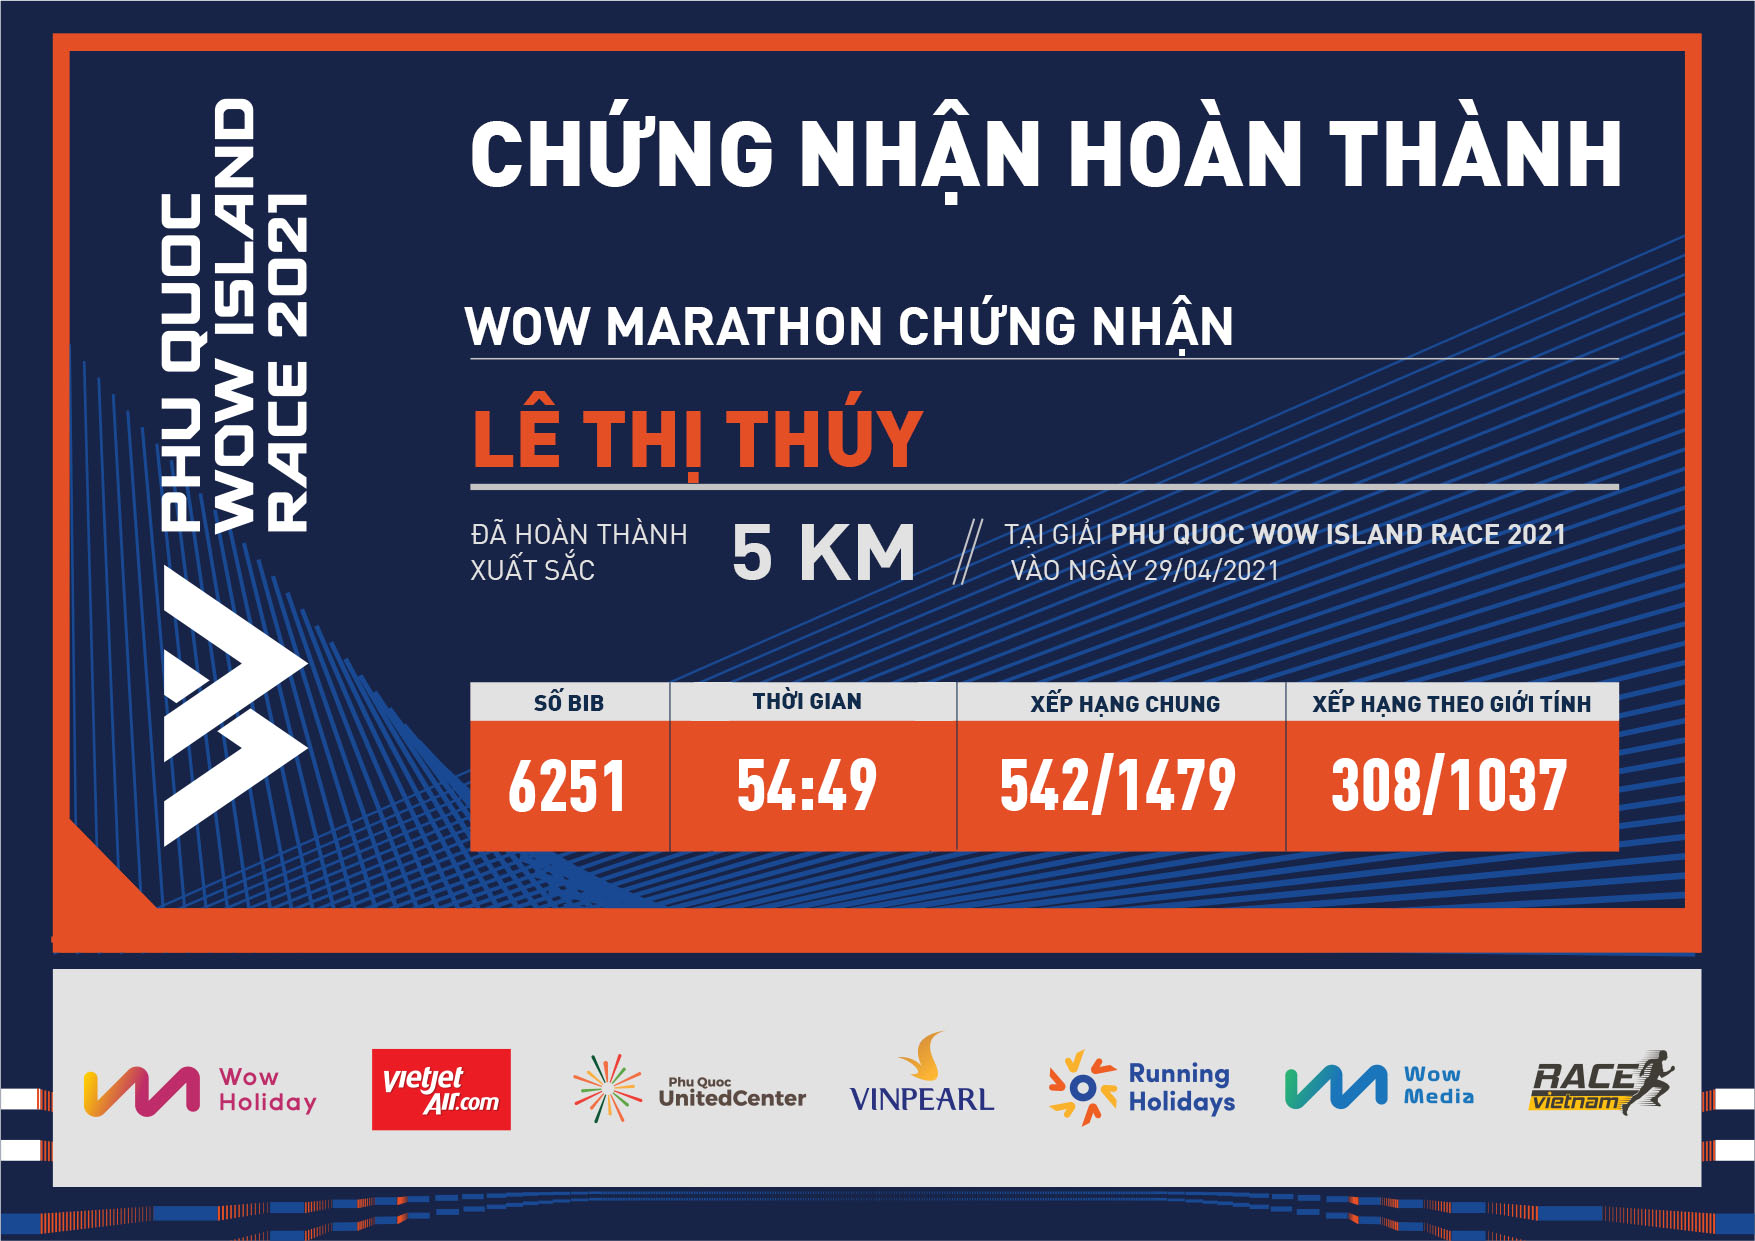 6251 - Lê Thị Thúy